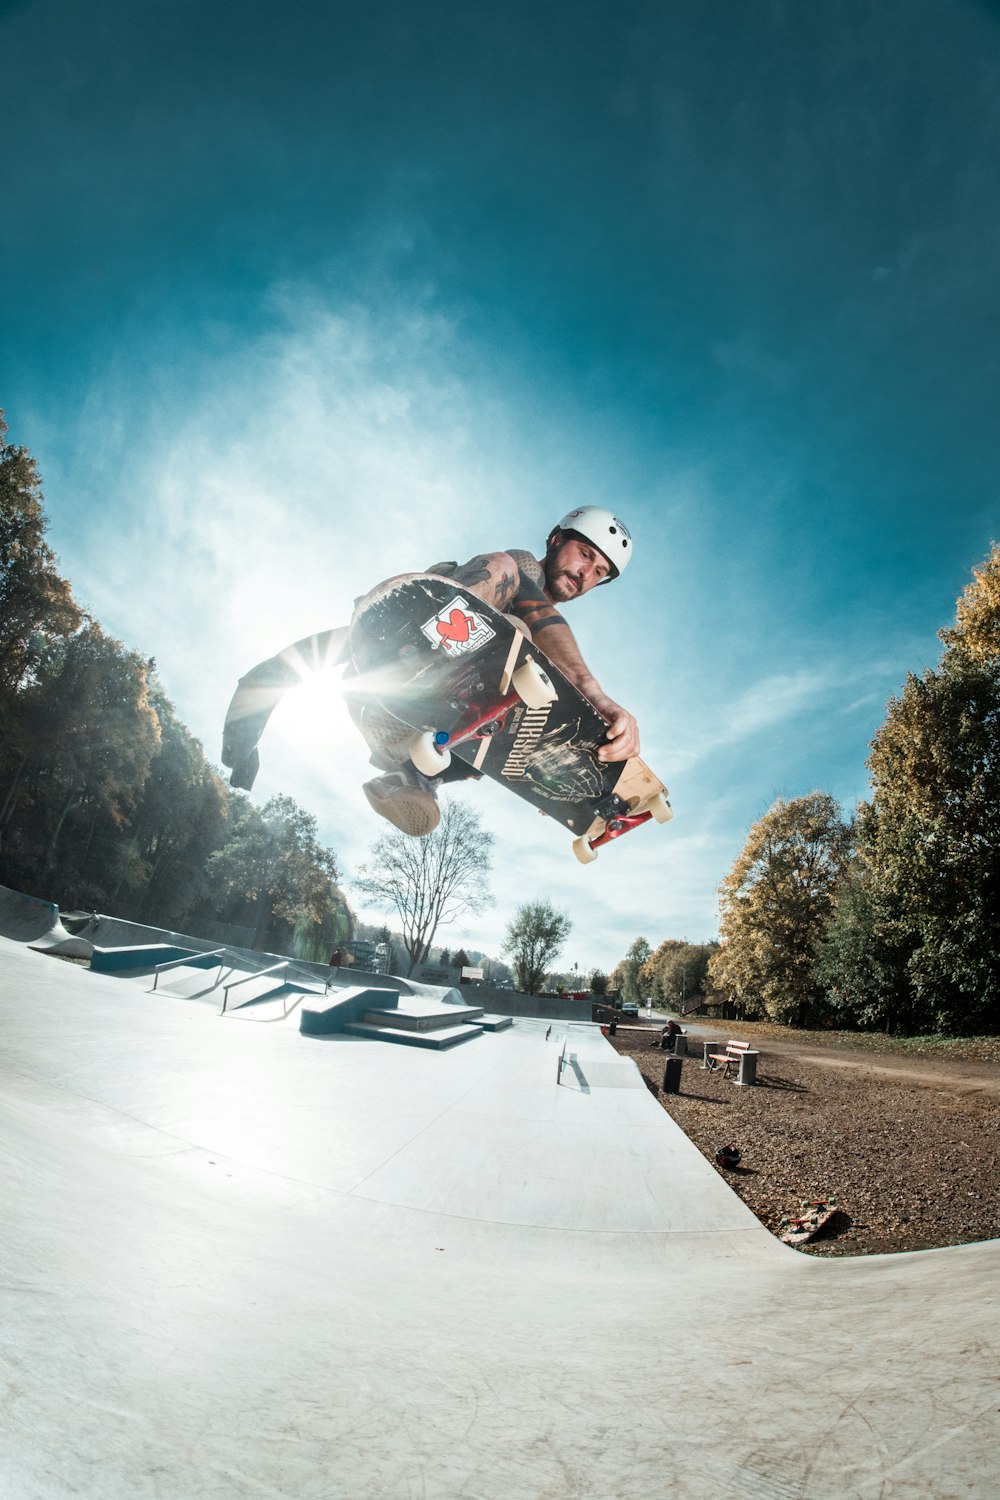 스케이트보드를 타고 있는 남자의 로우 앵글 사진